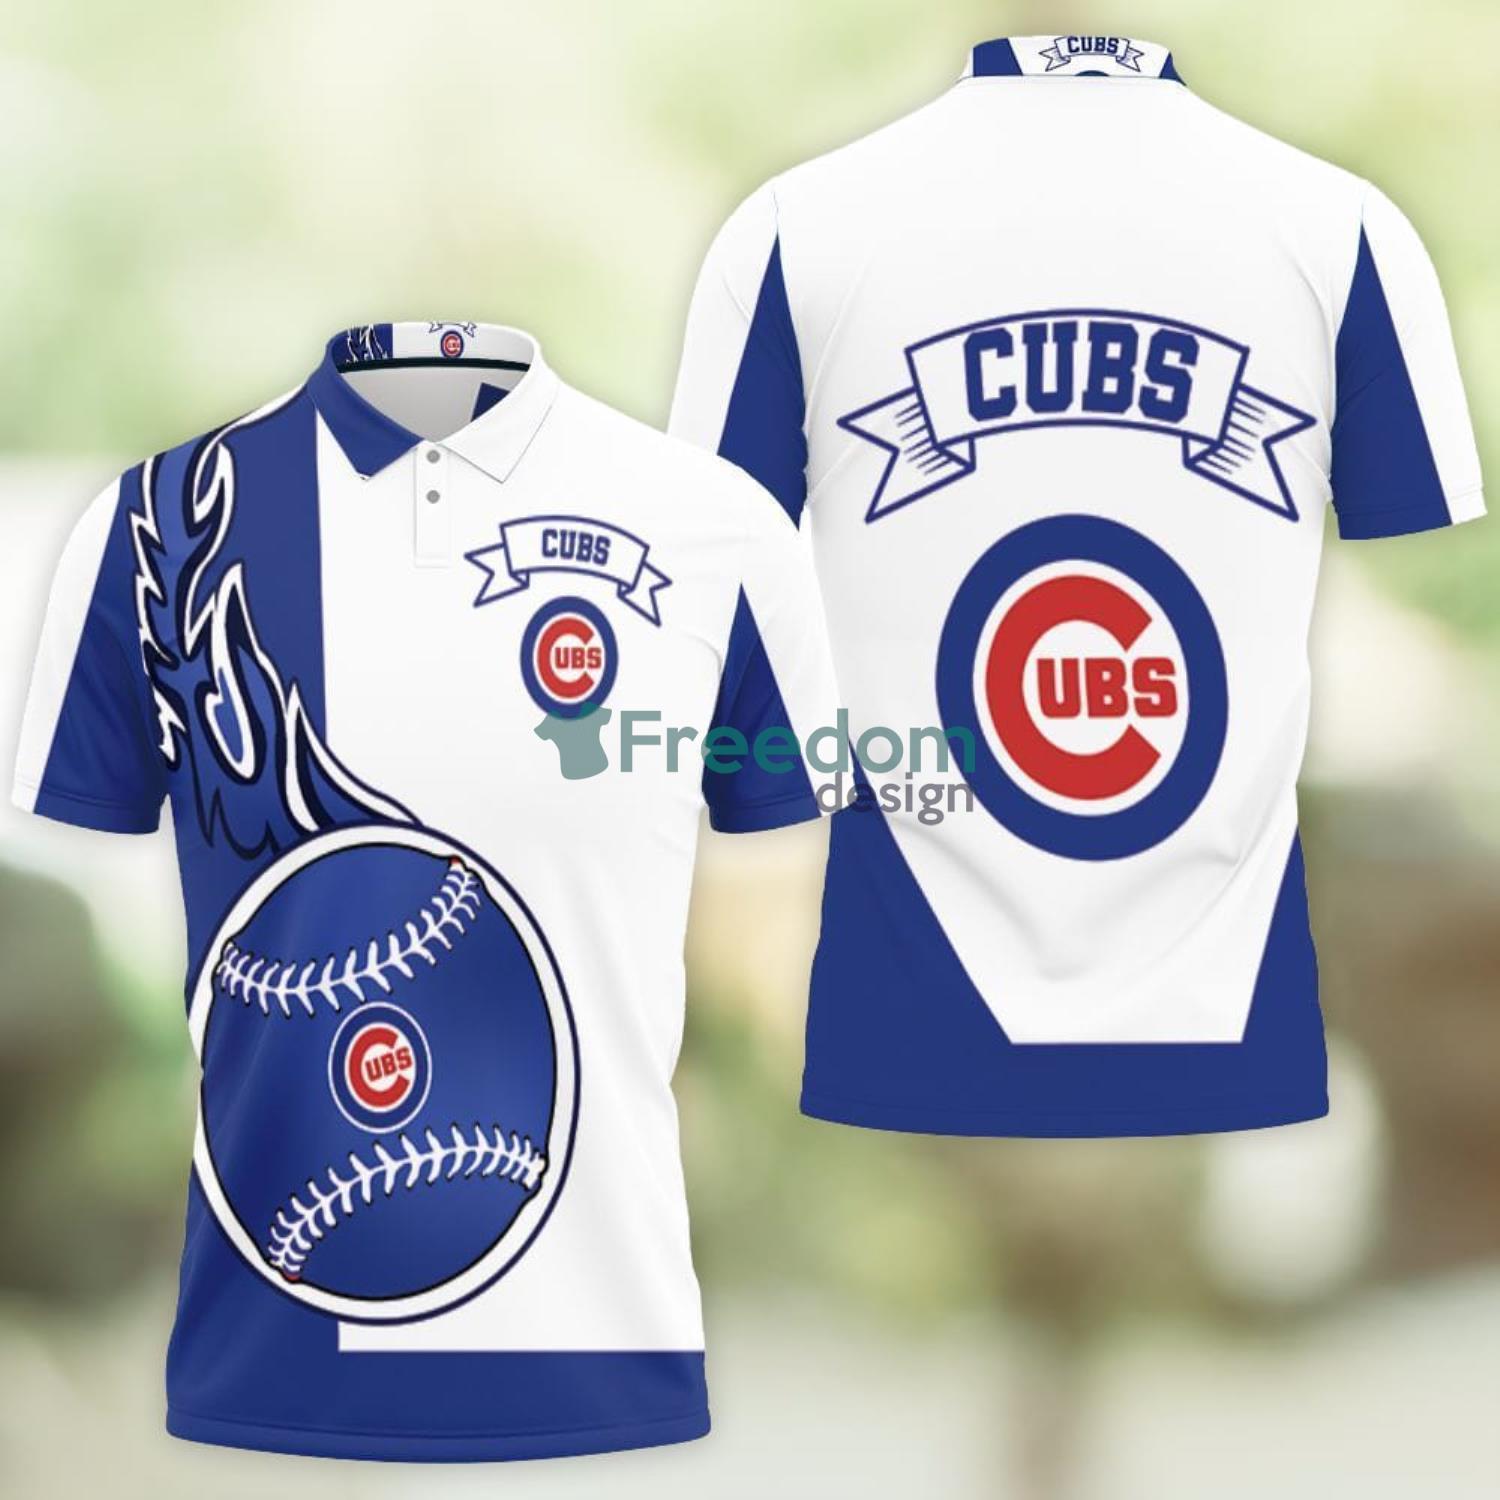 Chicago White Sox 3D Sport Fans Polo Shirt For Men - Freedomdesign